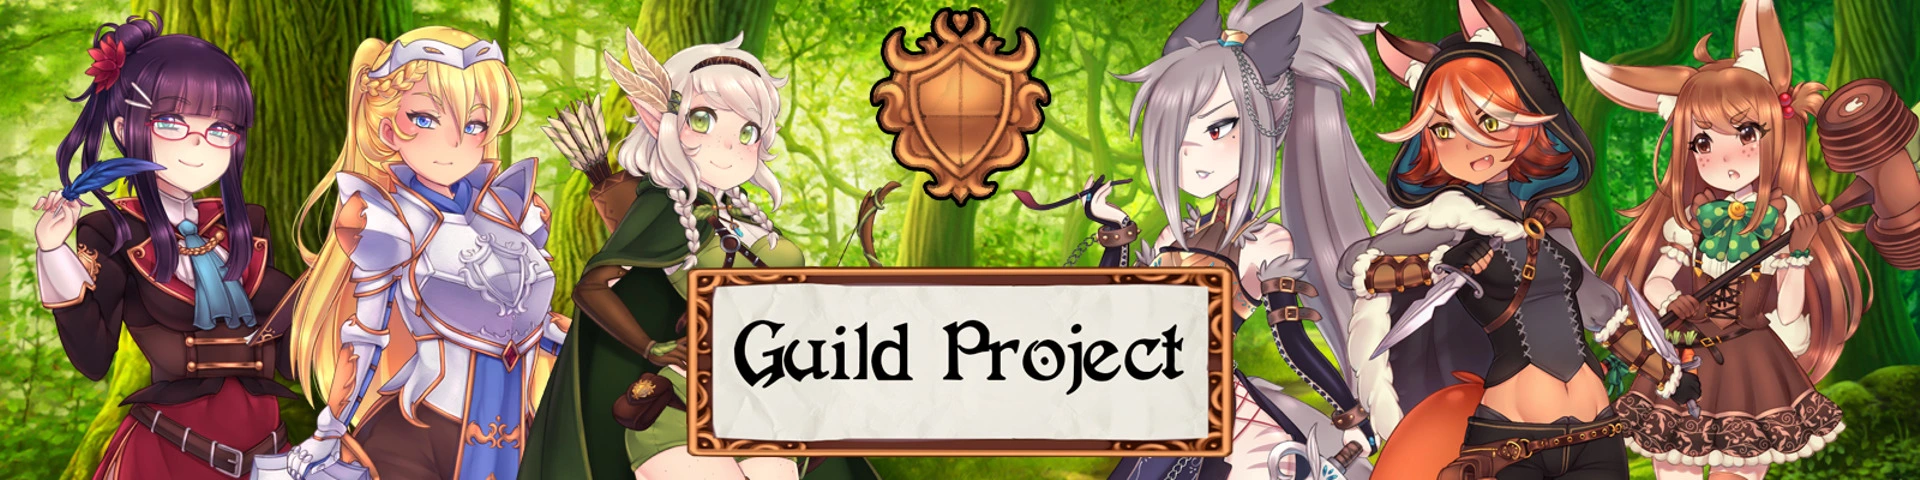 Guild Project [v0.0.13 Public Build] main image